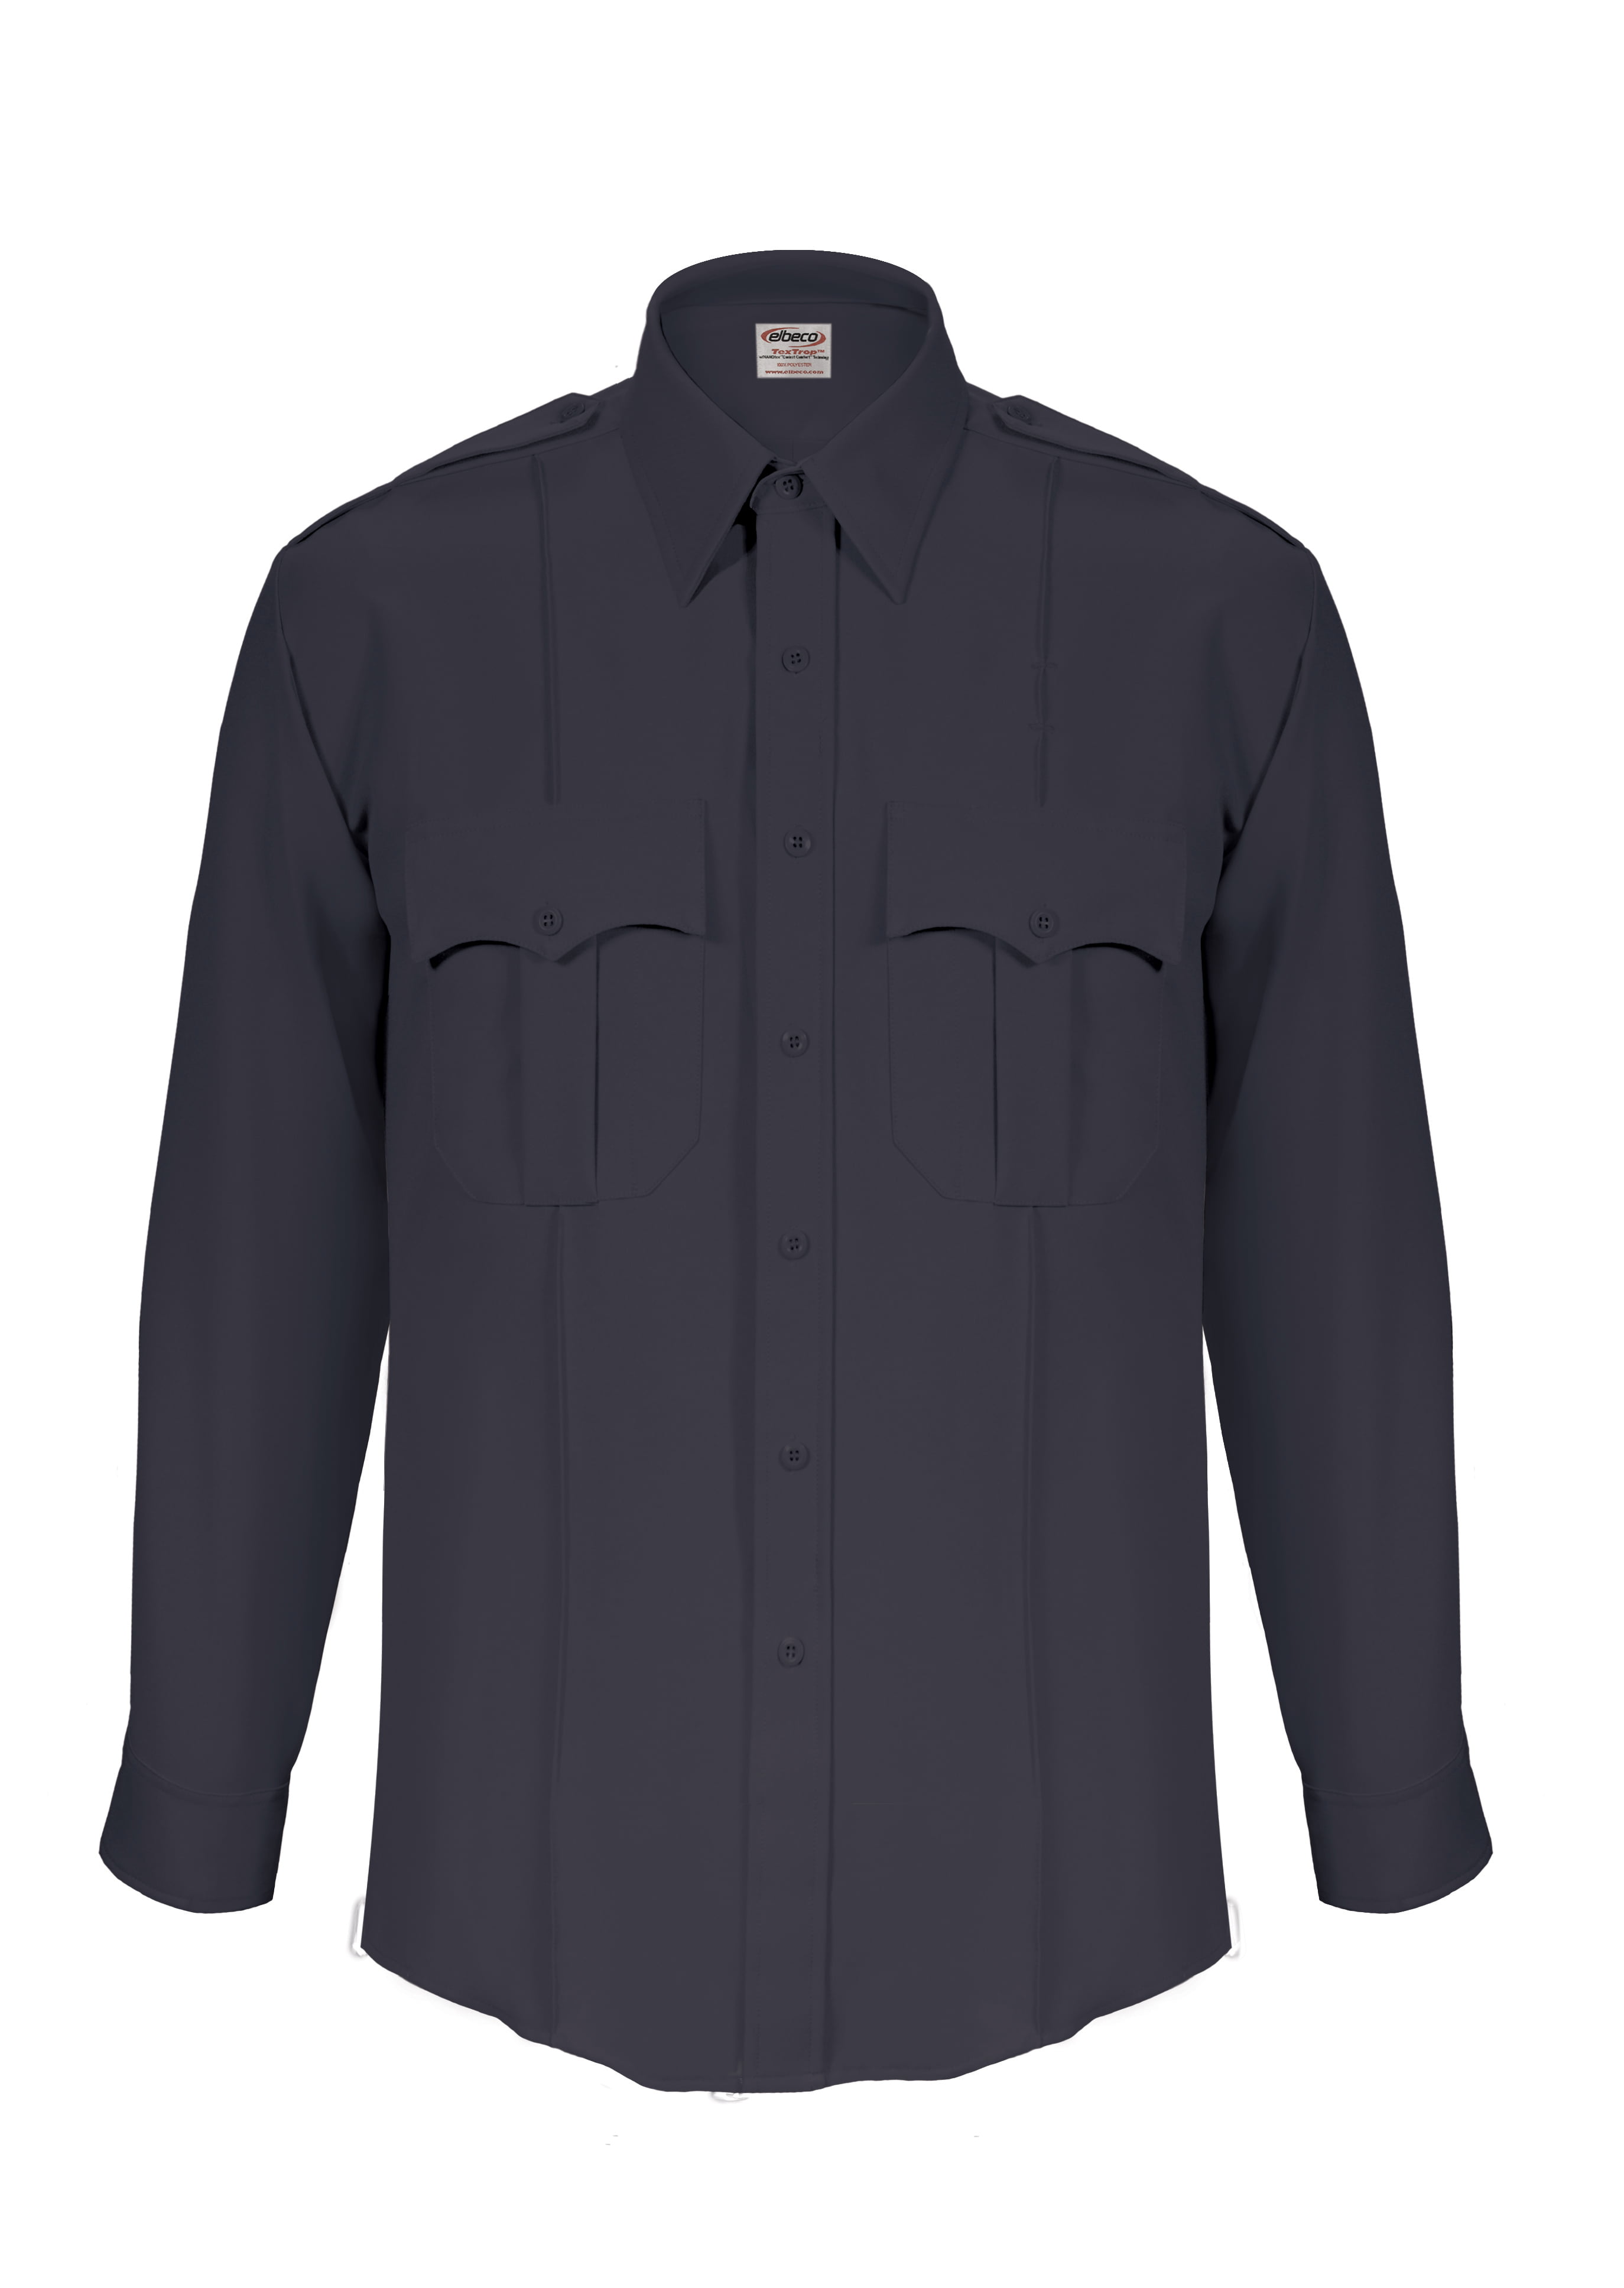 Elbeco Men's Textrop2 Long Sleeve Shirt With Zipper Front - Walmart.com